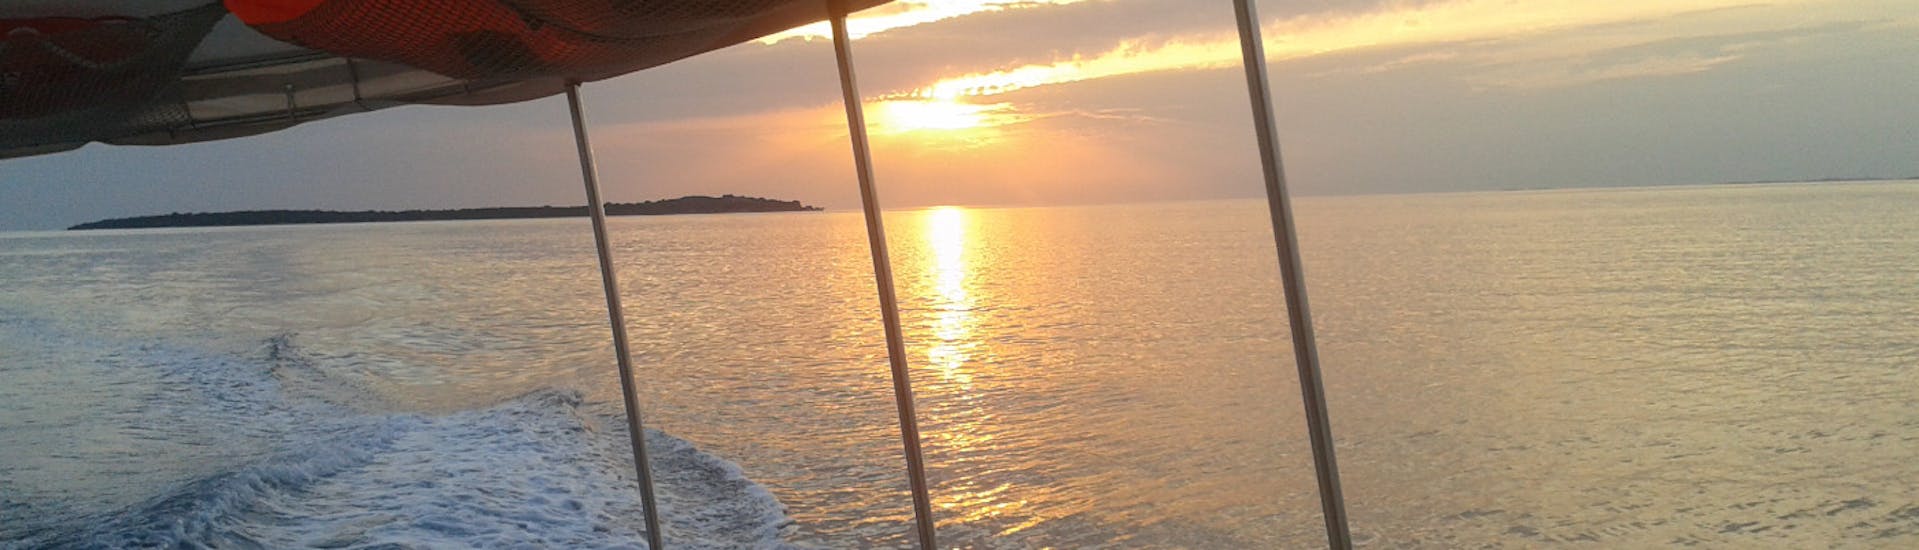 Sonnenuntergang während der Bootstour zum Brijuni Nationalpark bei Sonnenuntergang mit Delphinbeobachtung.